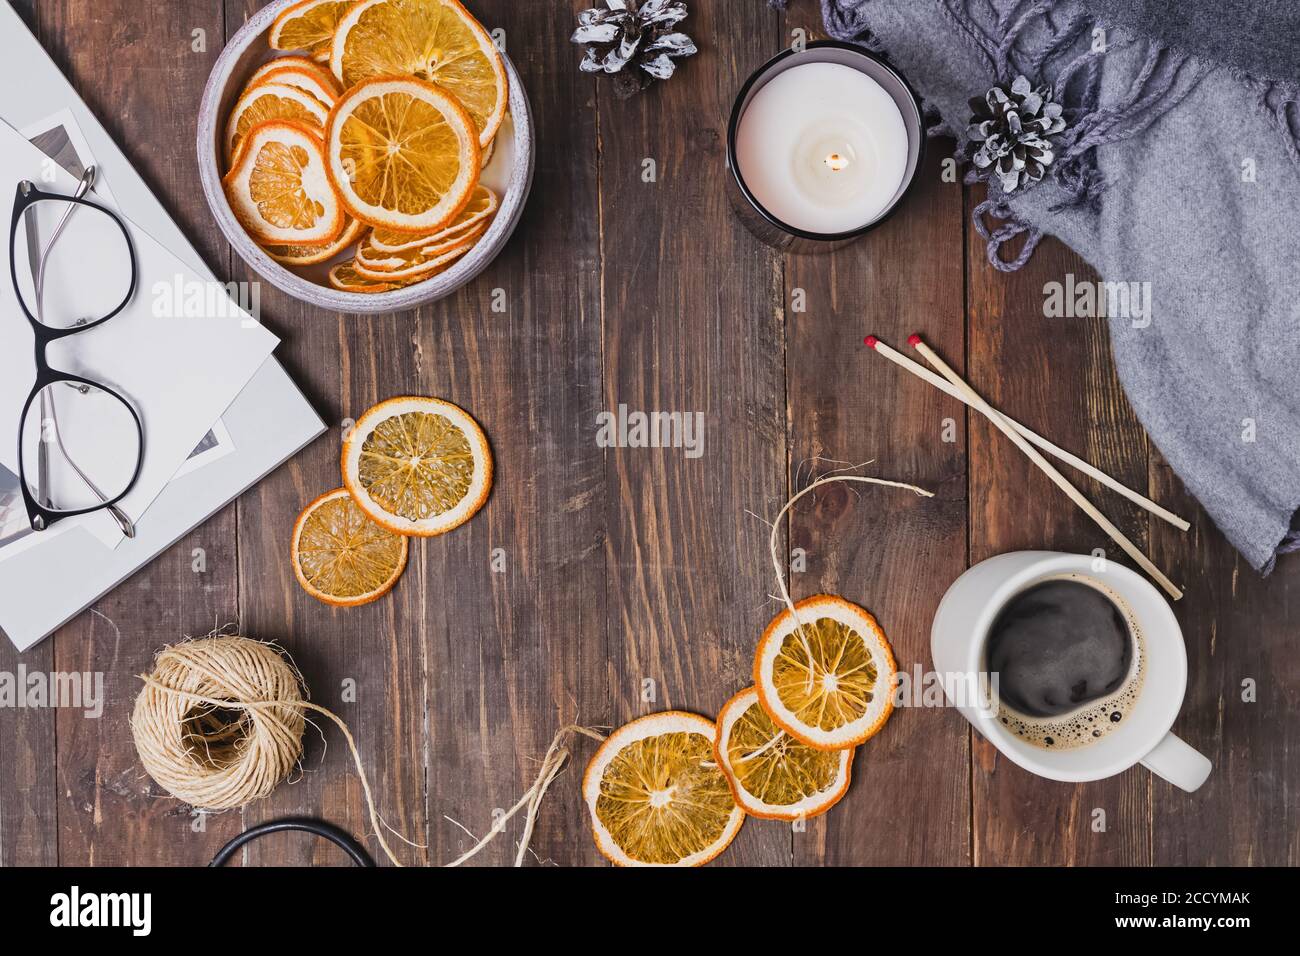 Séchez les oranges, le café et la bougie sur une table en bois. Banque D'Images